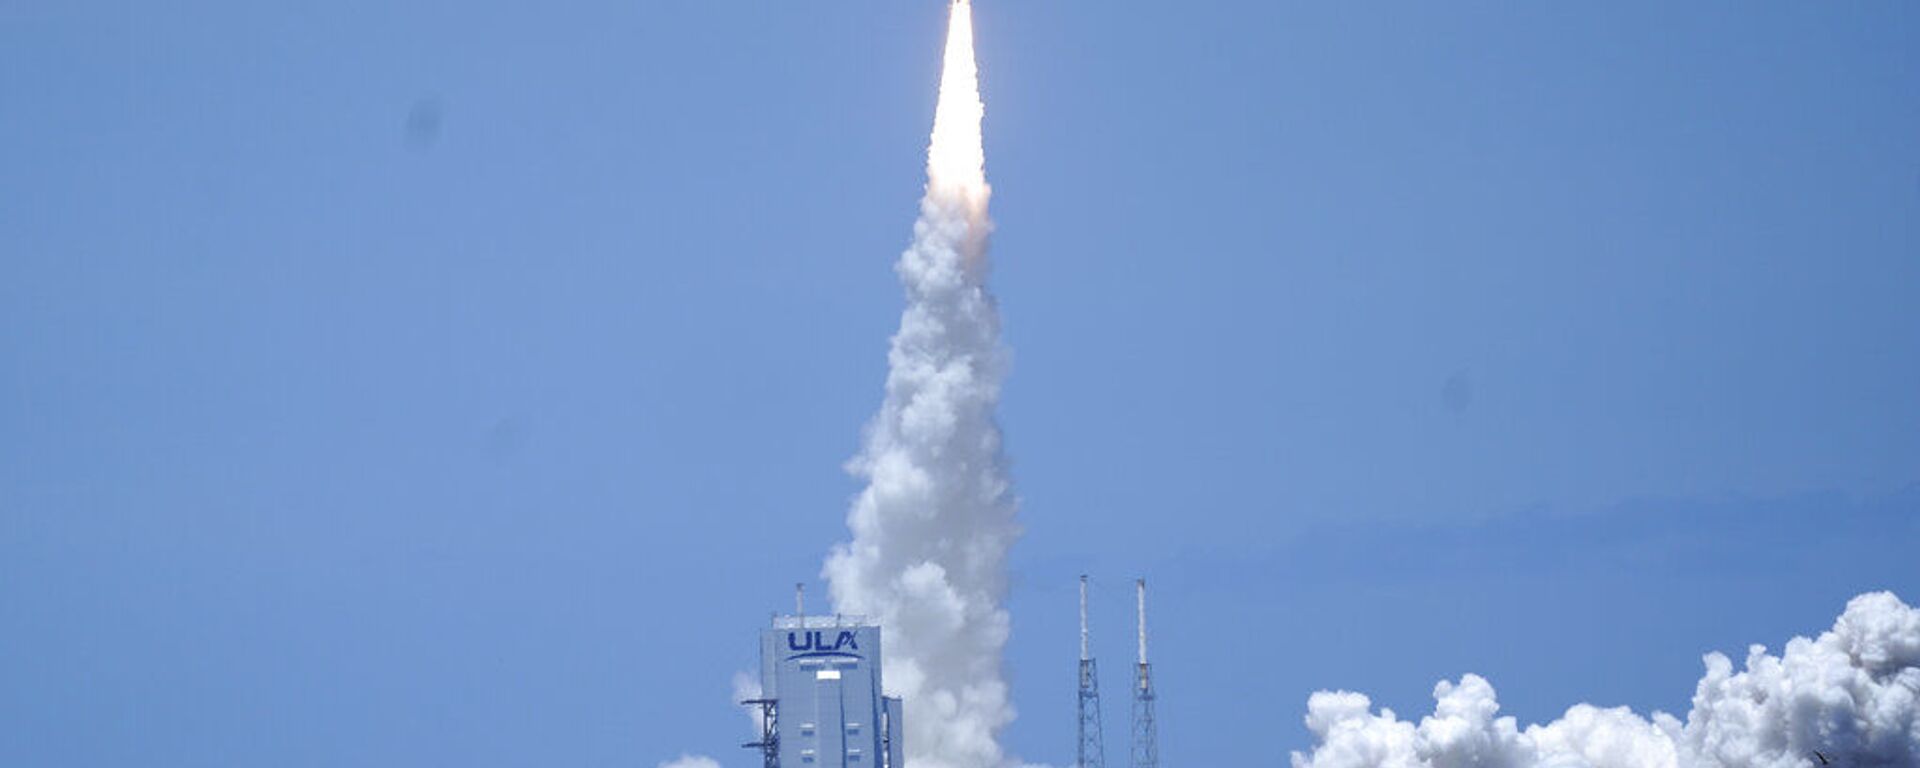 A United Launch Alliance lança o foguete Atlas V com o satélite SBIRS GEO 5 na estação da Força Espacial dos EUA em Cabo Canaveral, na Flórida - Sputnik Brasil, 1920, 03.09.2021